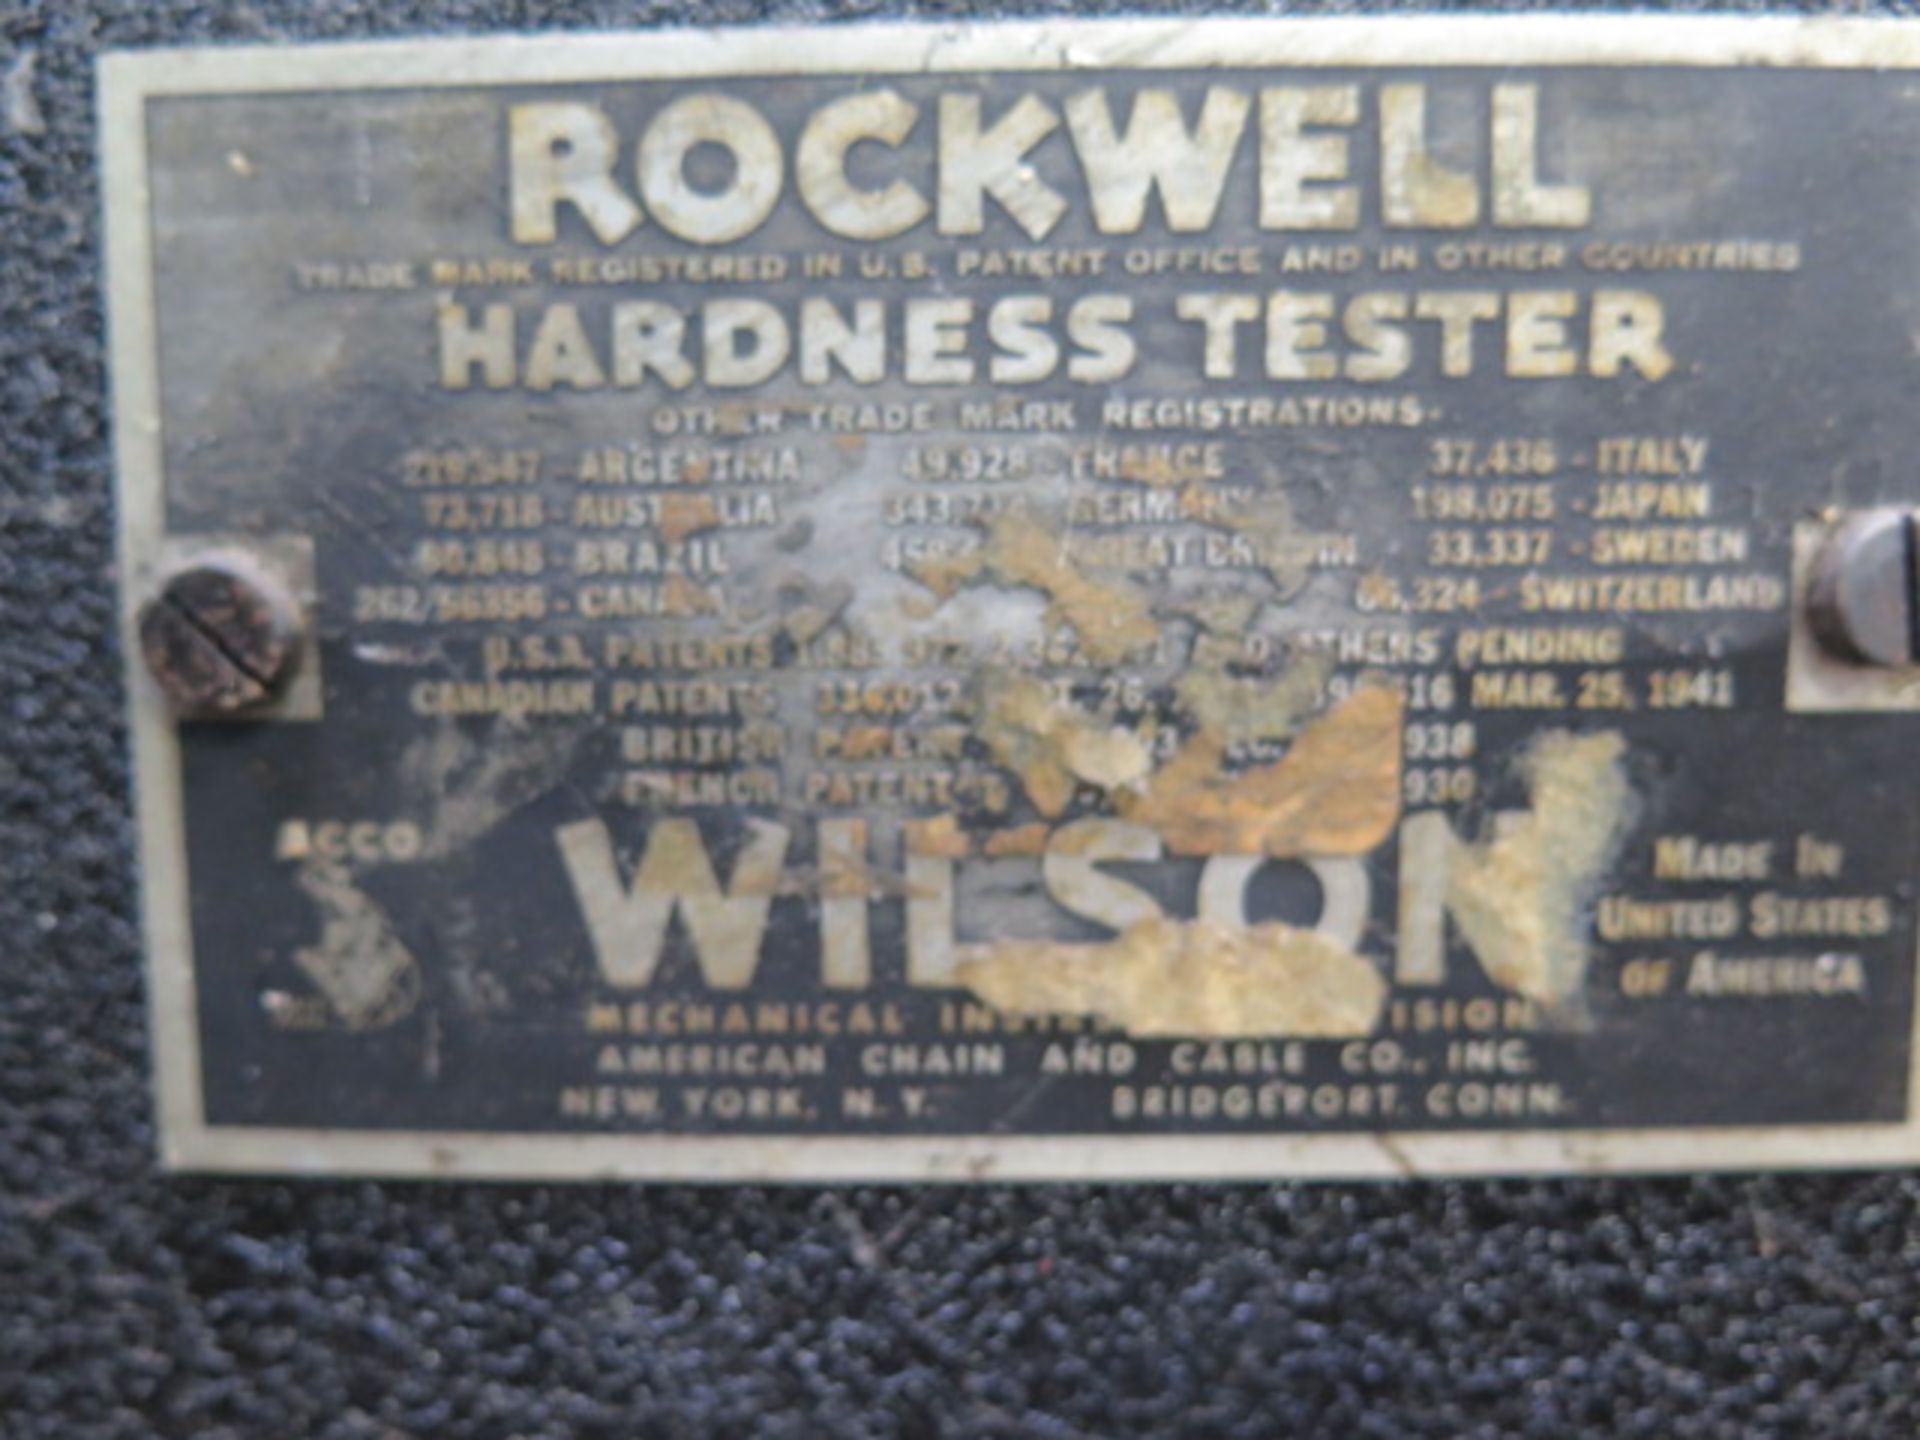 Wilson mdl. 4 TT BB Rockwell Hardness Tester s/n 12 - Image 6 of 6